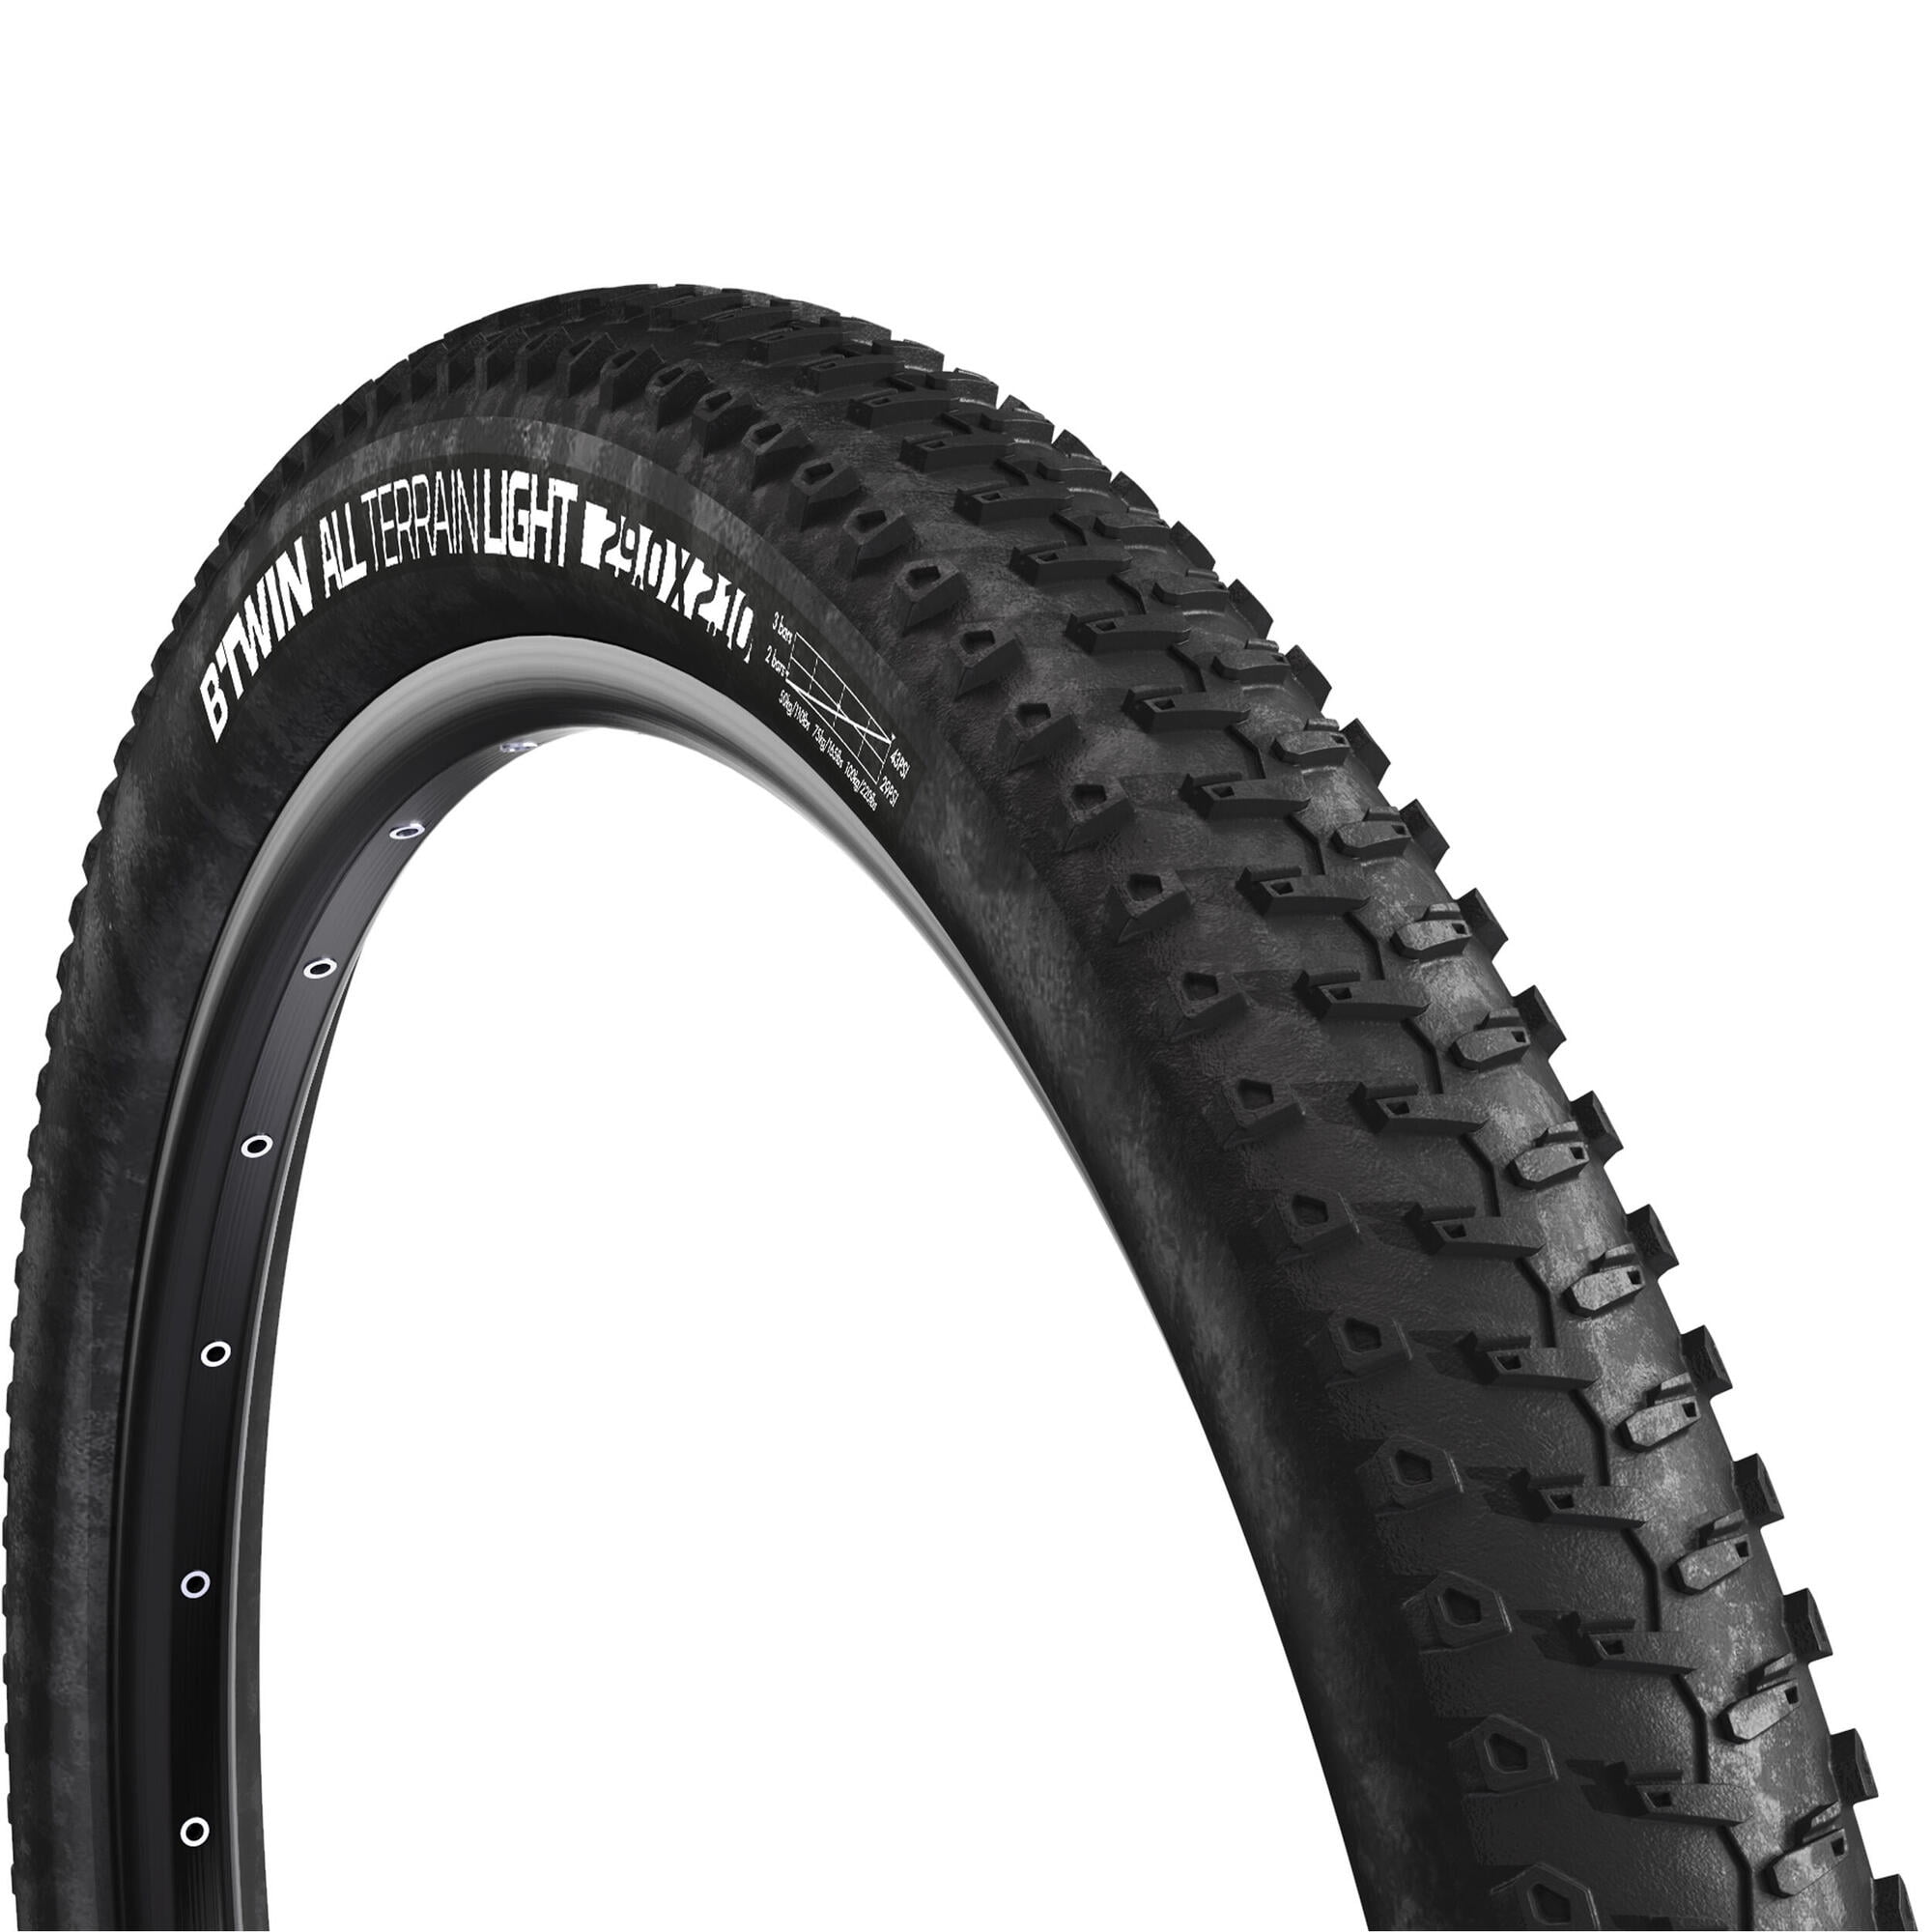 Bicycle Bike Tires & Tubes 26" x 2.125" Black/Black Side Wall &rim liners 1PAIR 